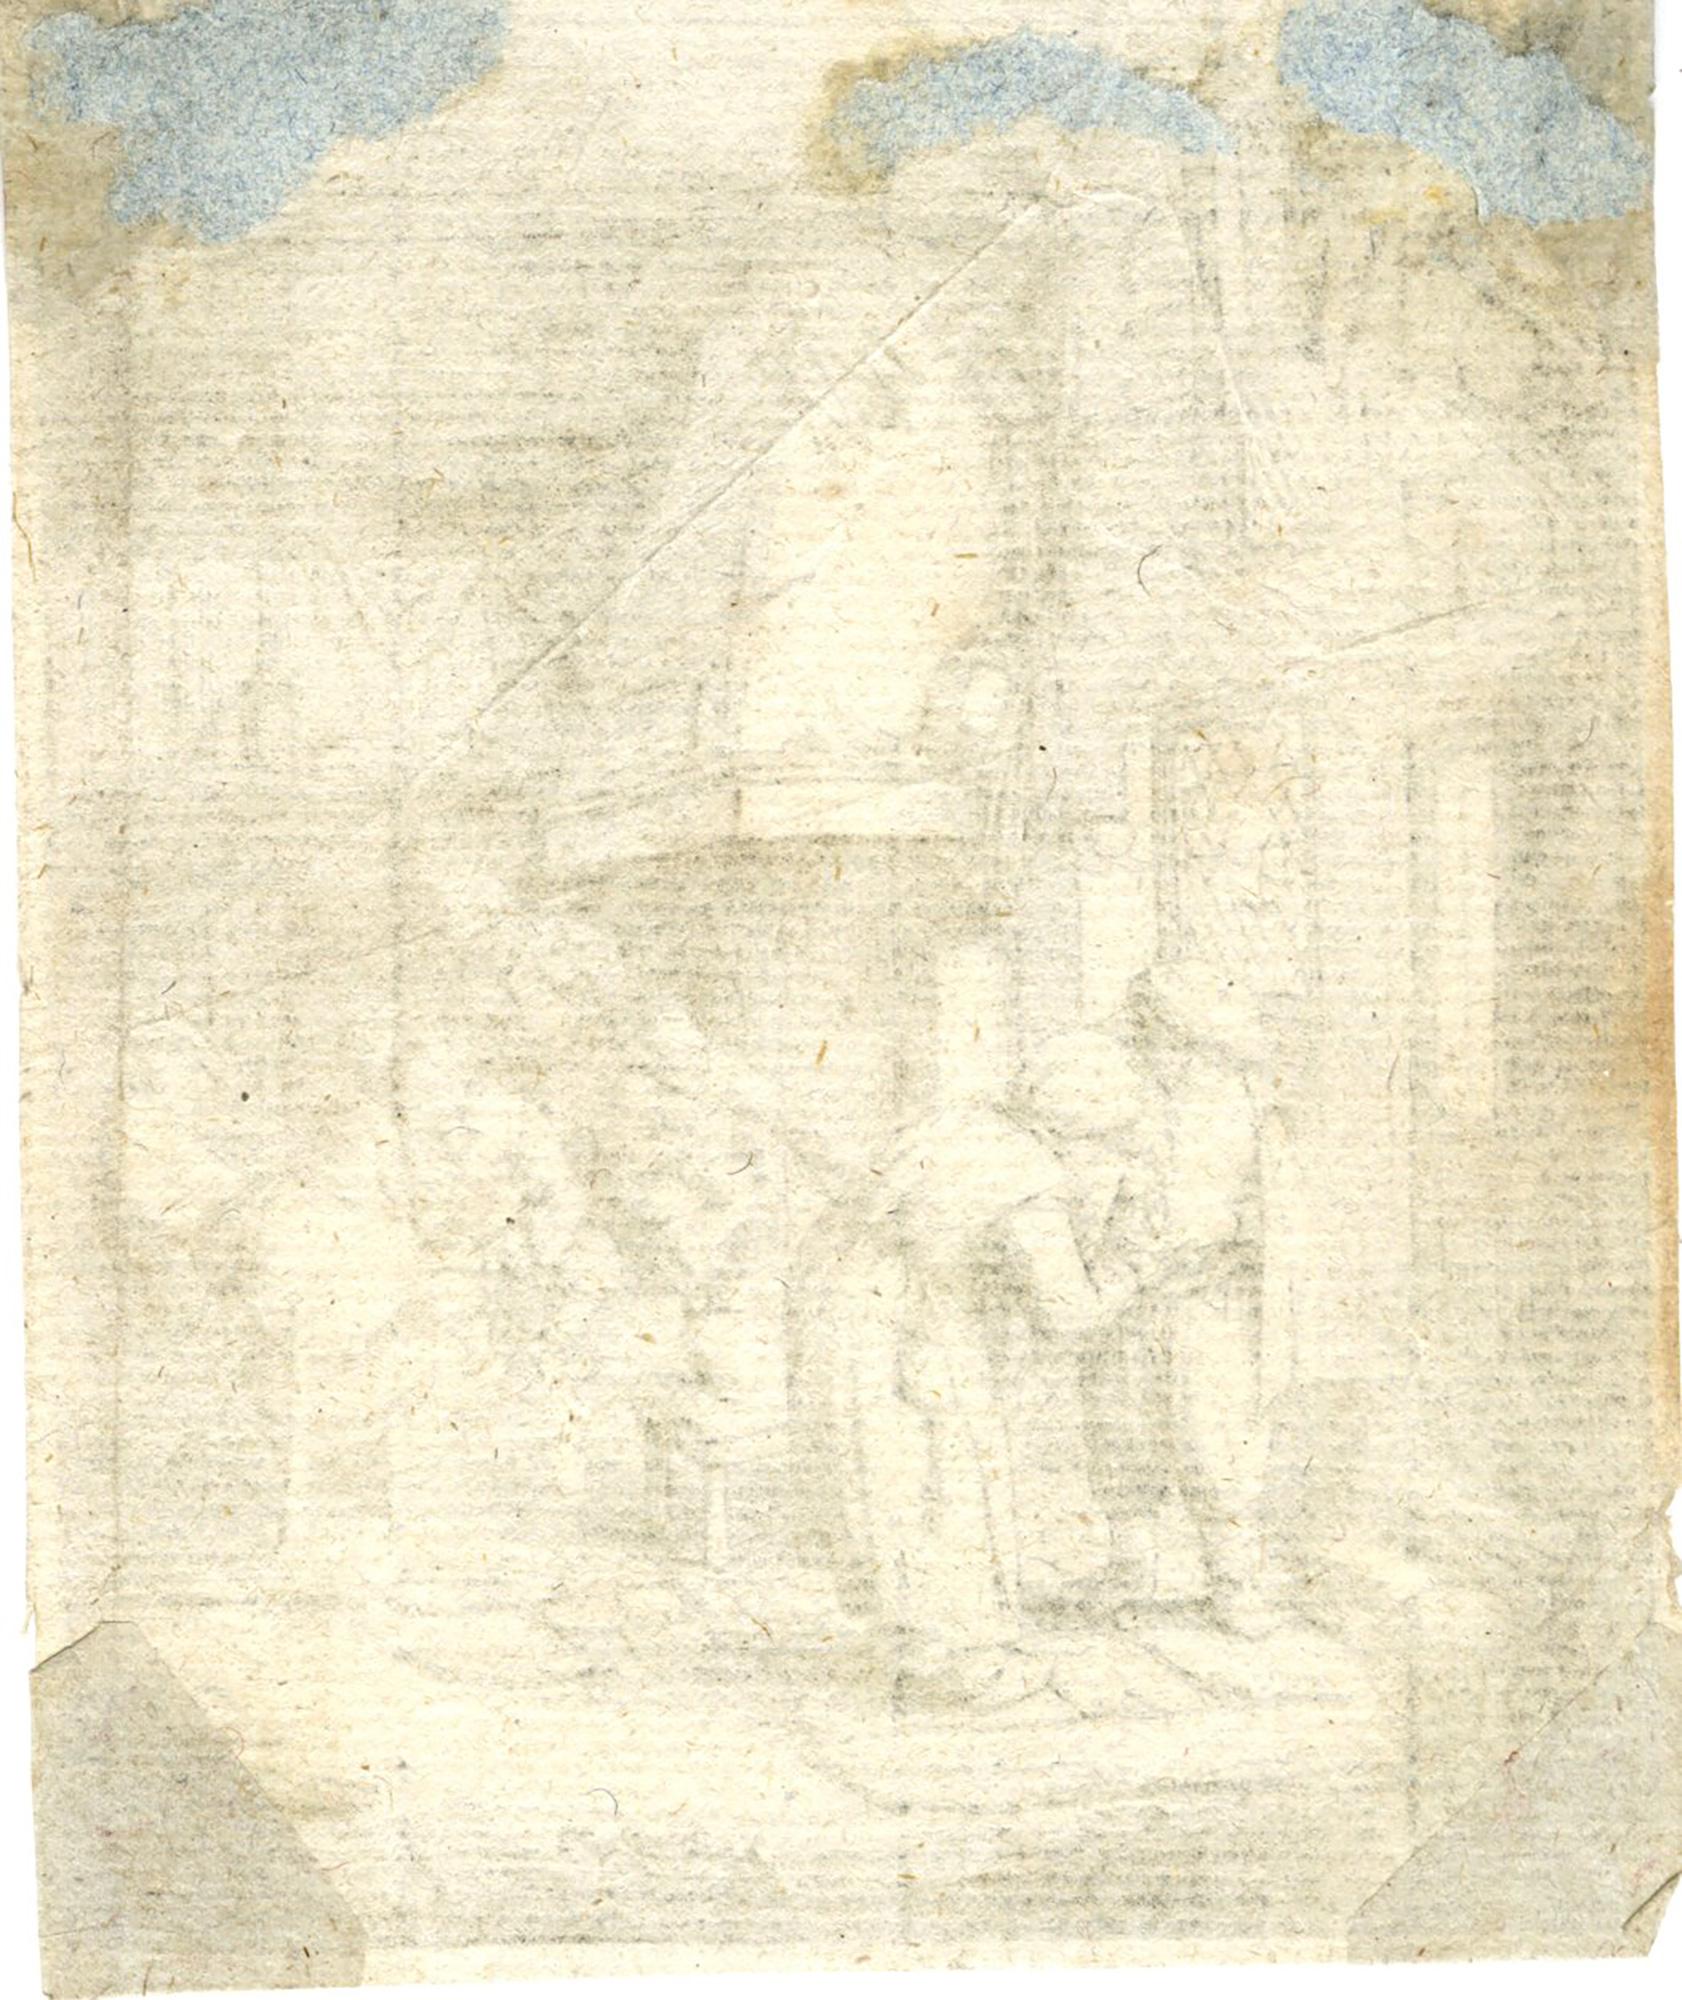 The Peasant Settling His Debt - Print by Adriaen van Ostade